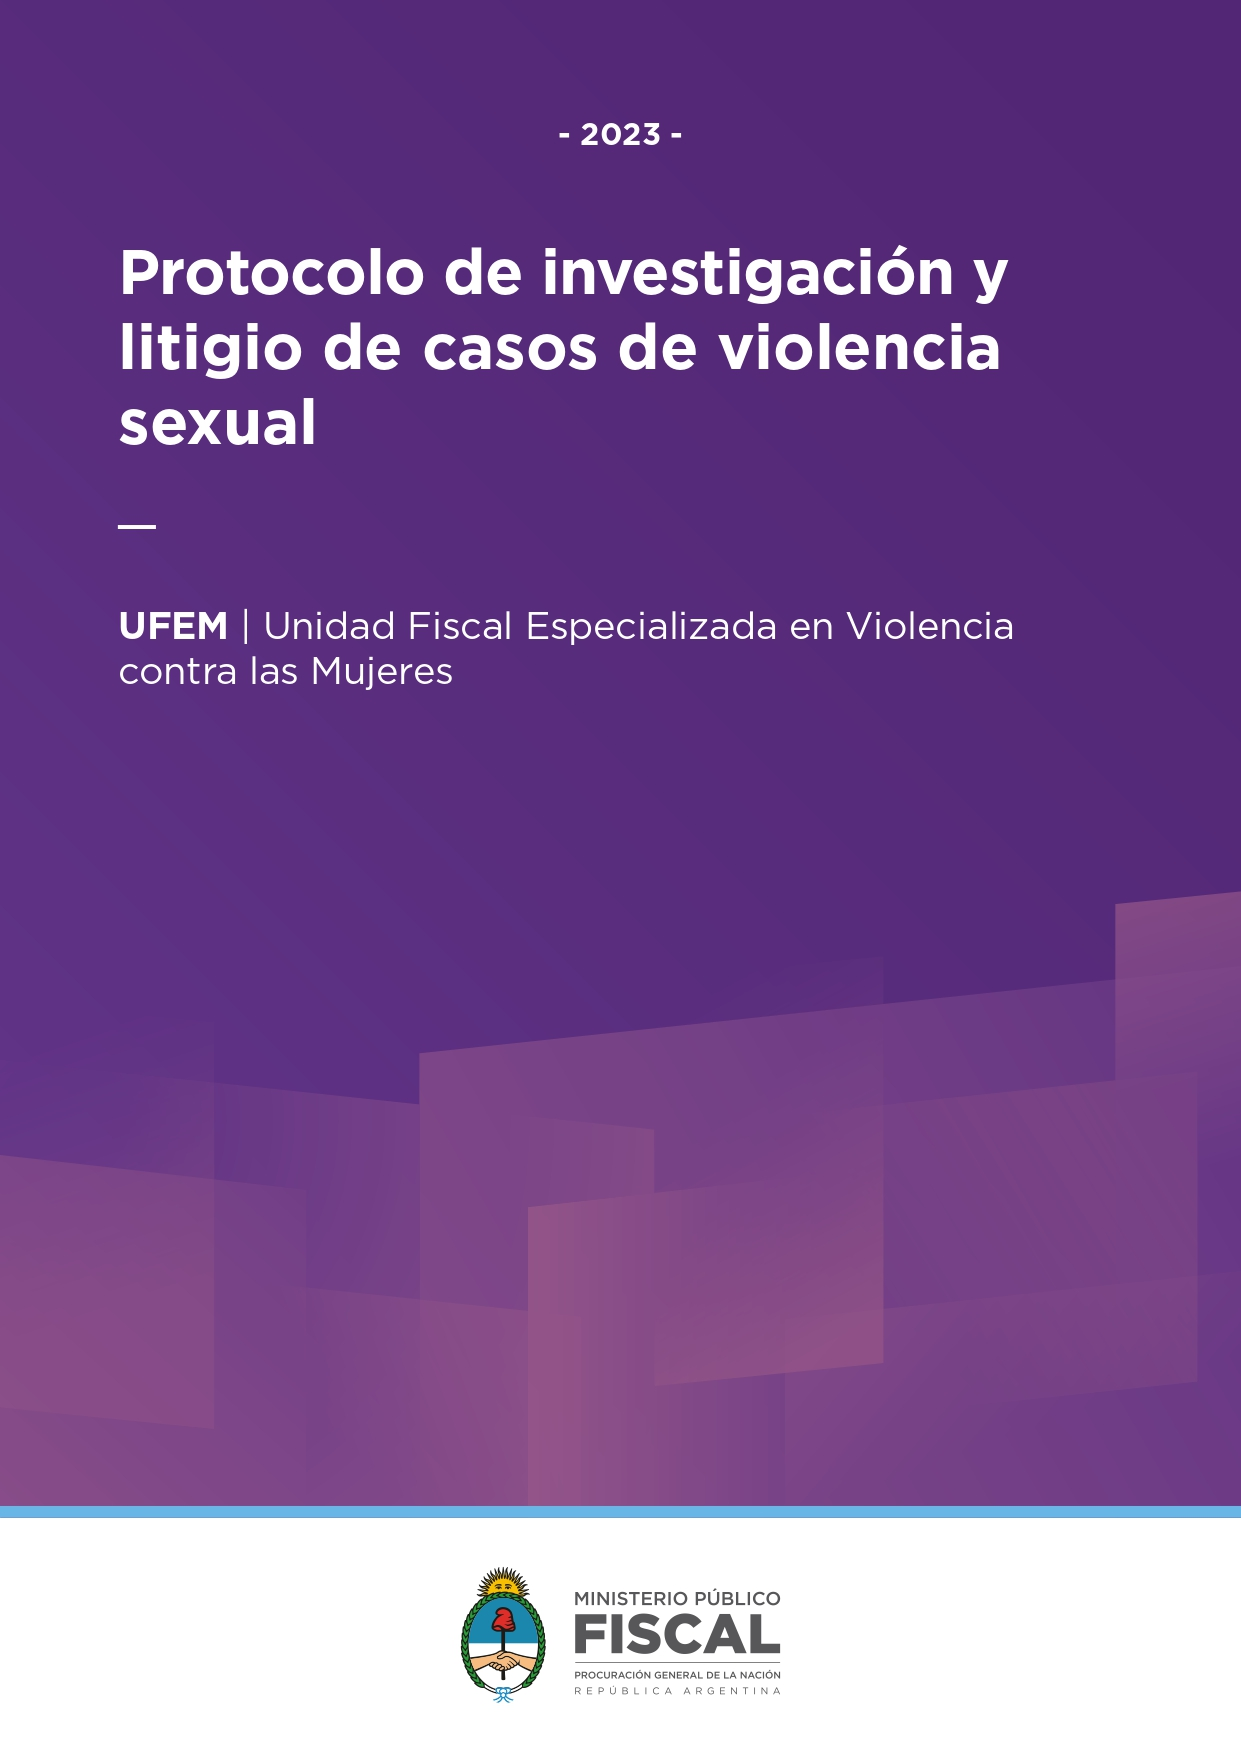 Protocolo de investigación y litigio de casos de violencia sexual